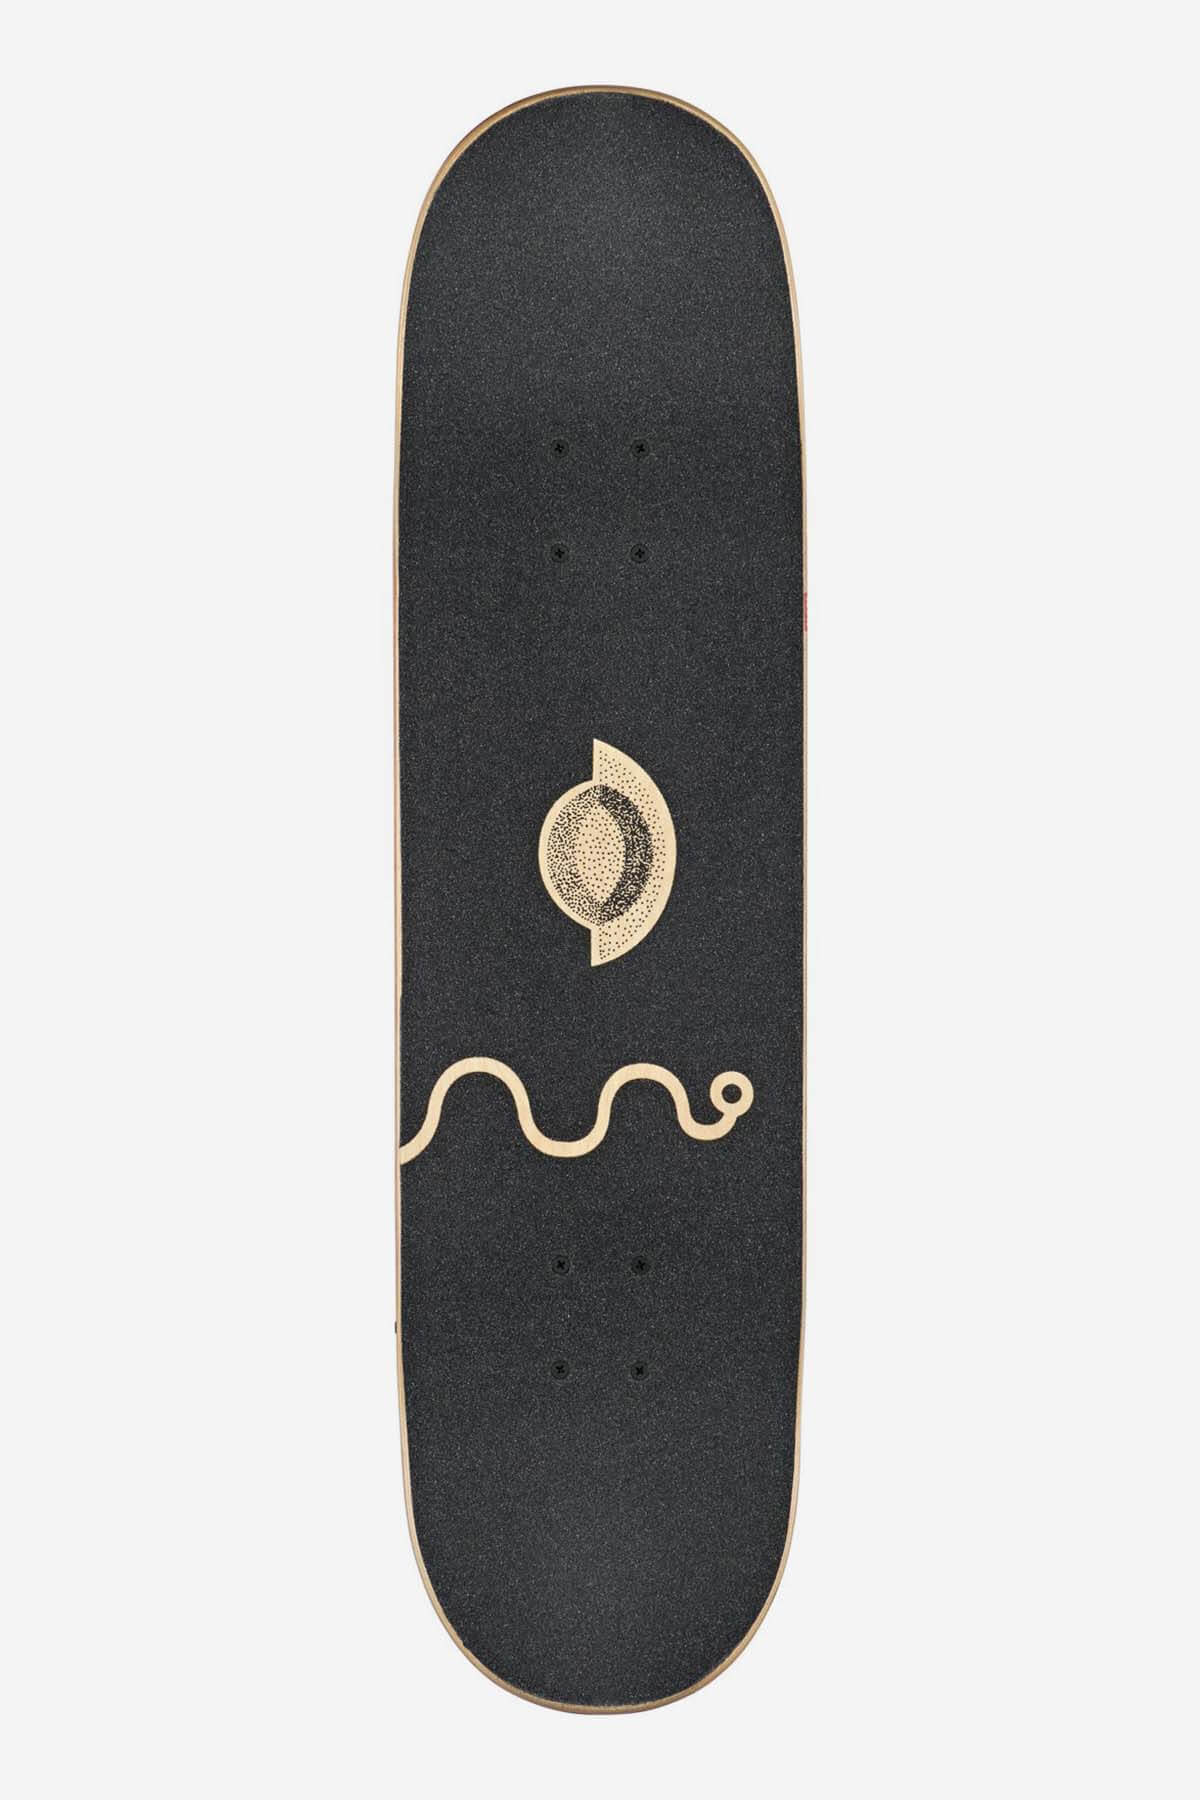 g2 razo ozar 8.25" complete skateboard